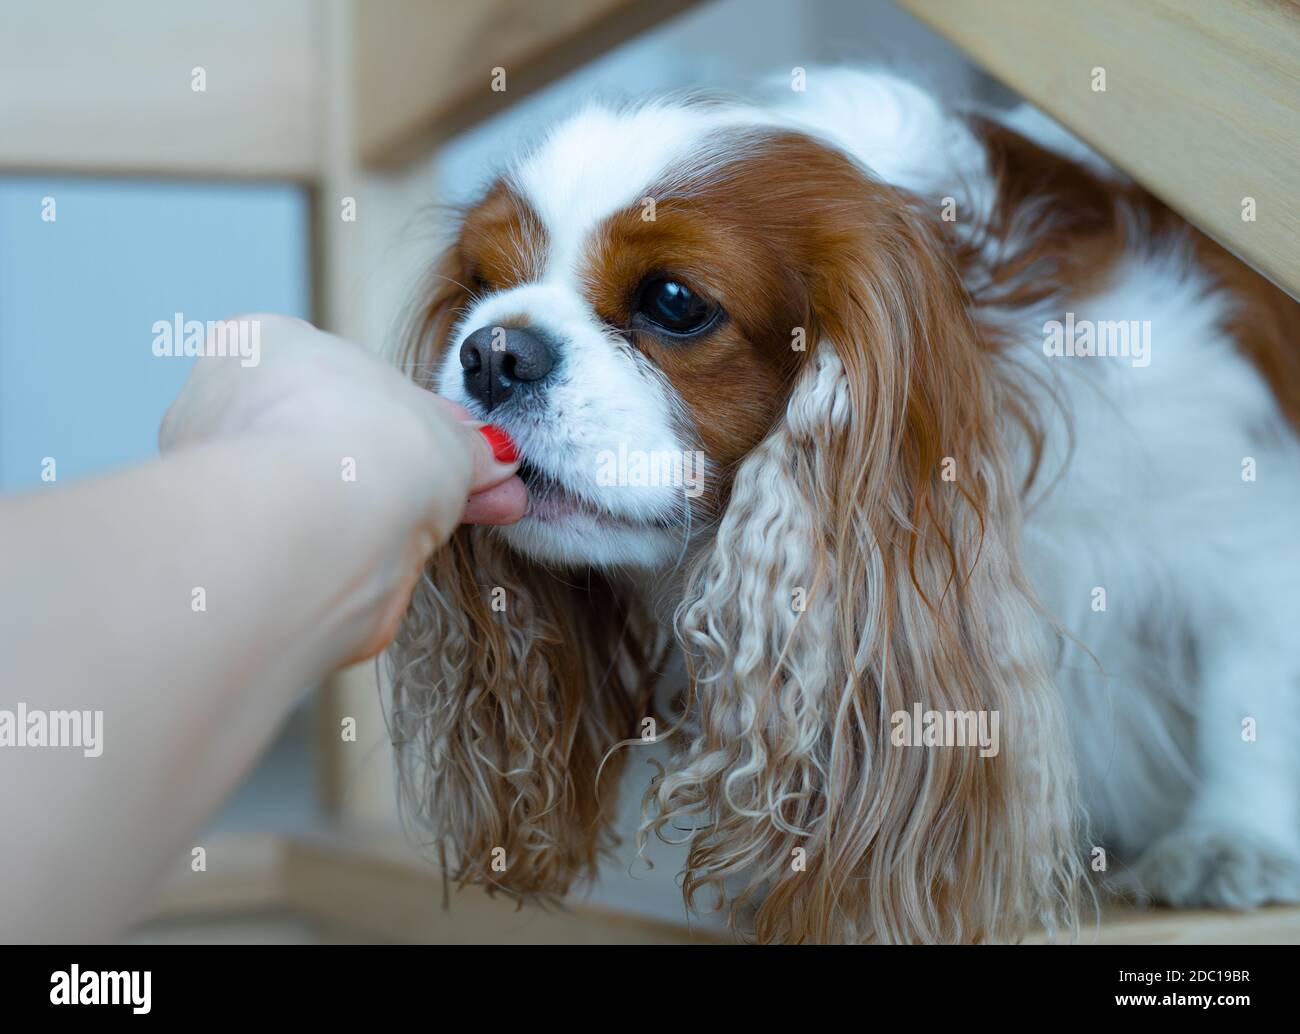 El perro Cavalier King Charles Spaniel come de la mano de su dueño durante el entrenamiento. Confianza total. Vida doméstica. Foto de primeros planos de estilo de vida Foto de stock